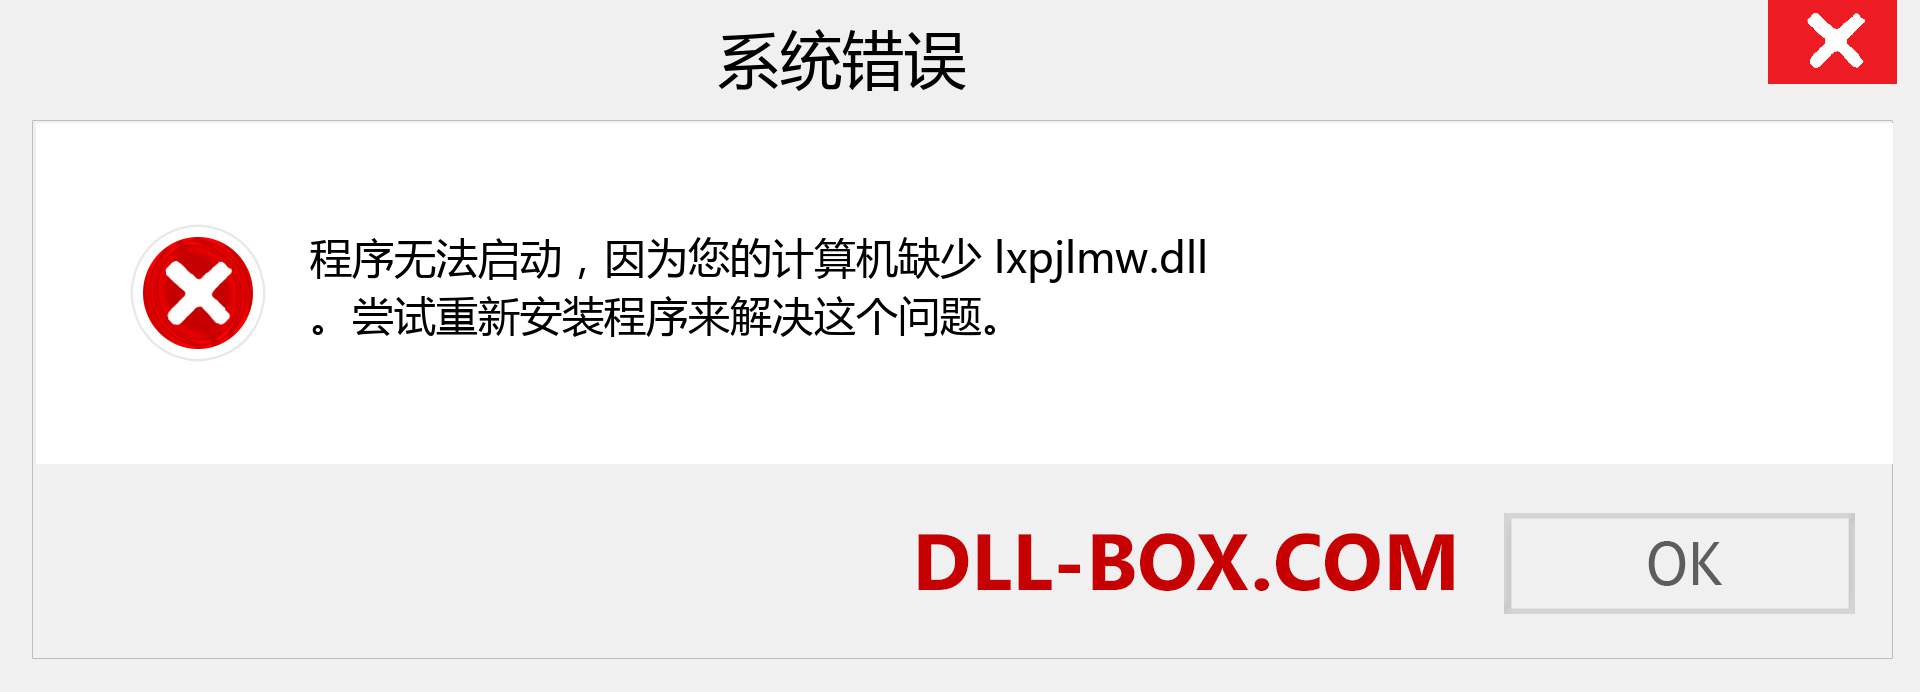 lxpjlmw.dll 文件丢失？。 适用于 Windows 7、8、10 的下载 - 修复 Windows、照片、图像上的 lxpjlmw dll 丢失错误